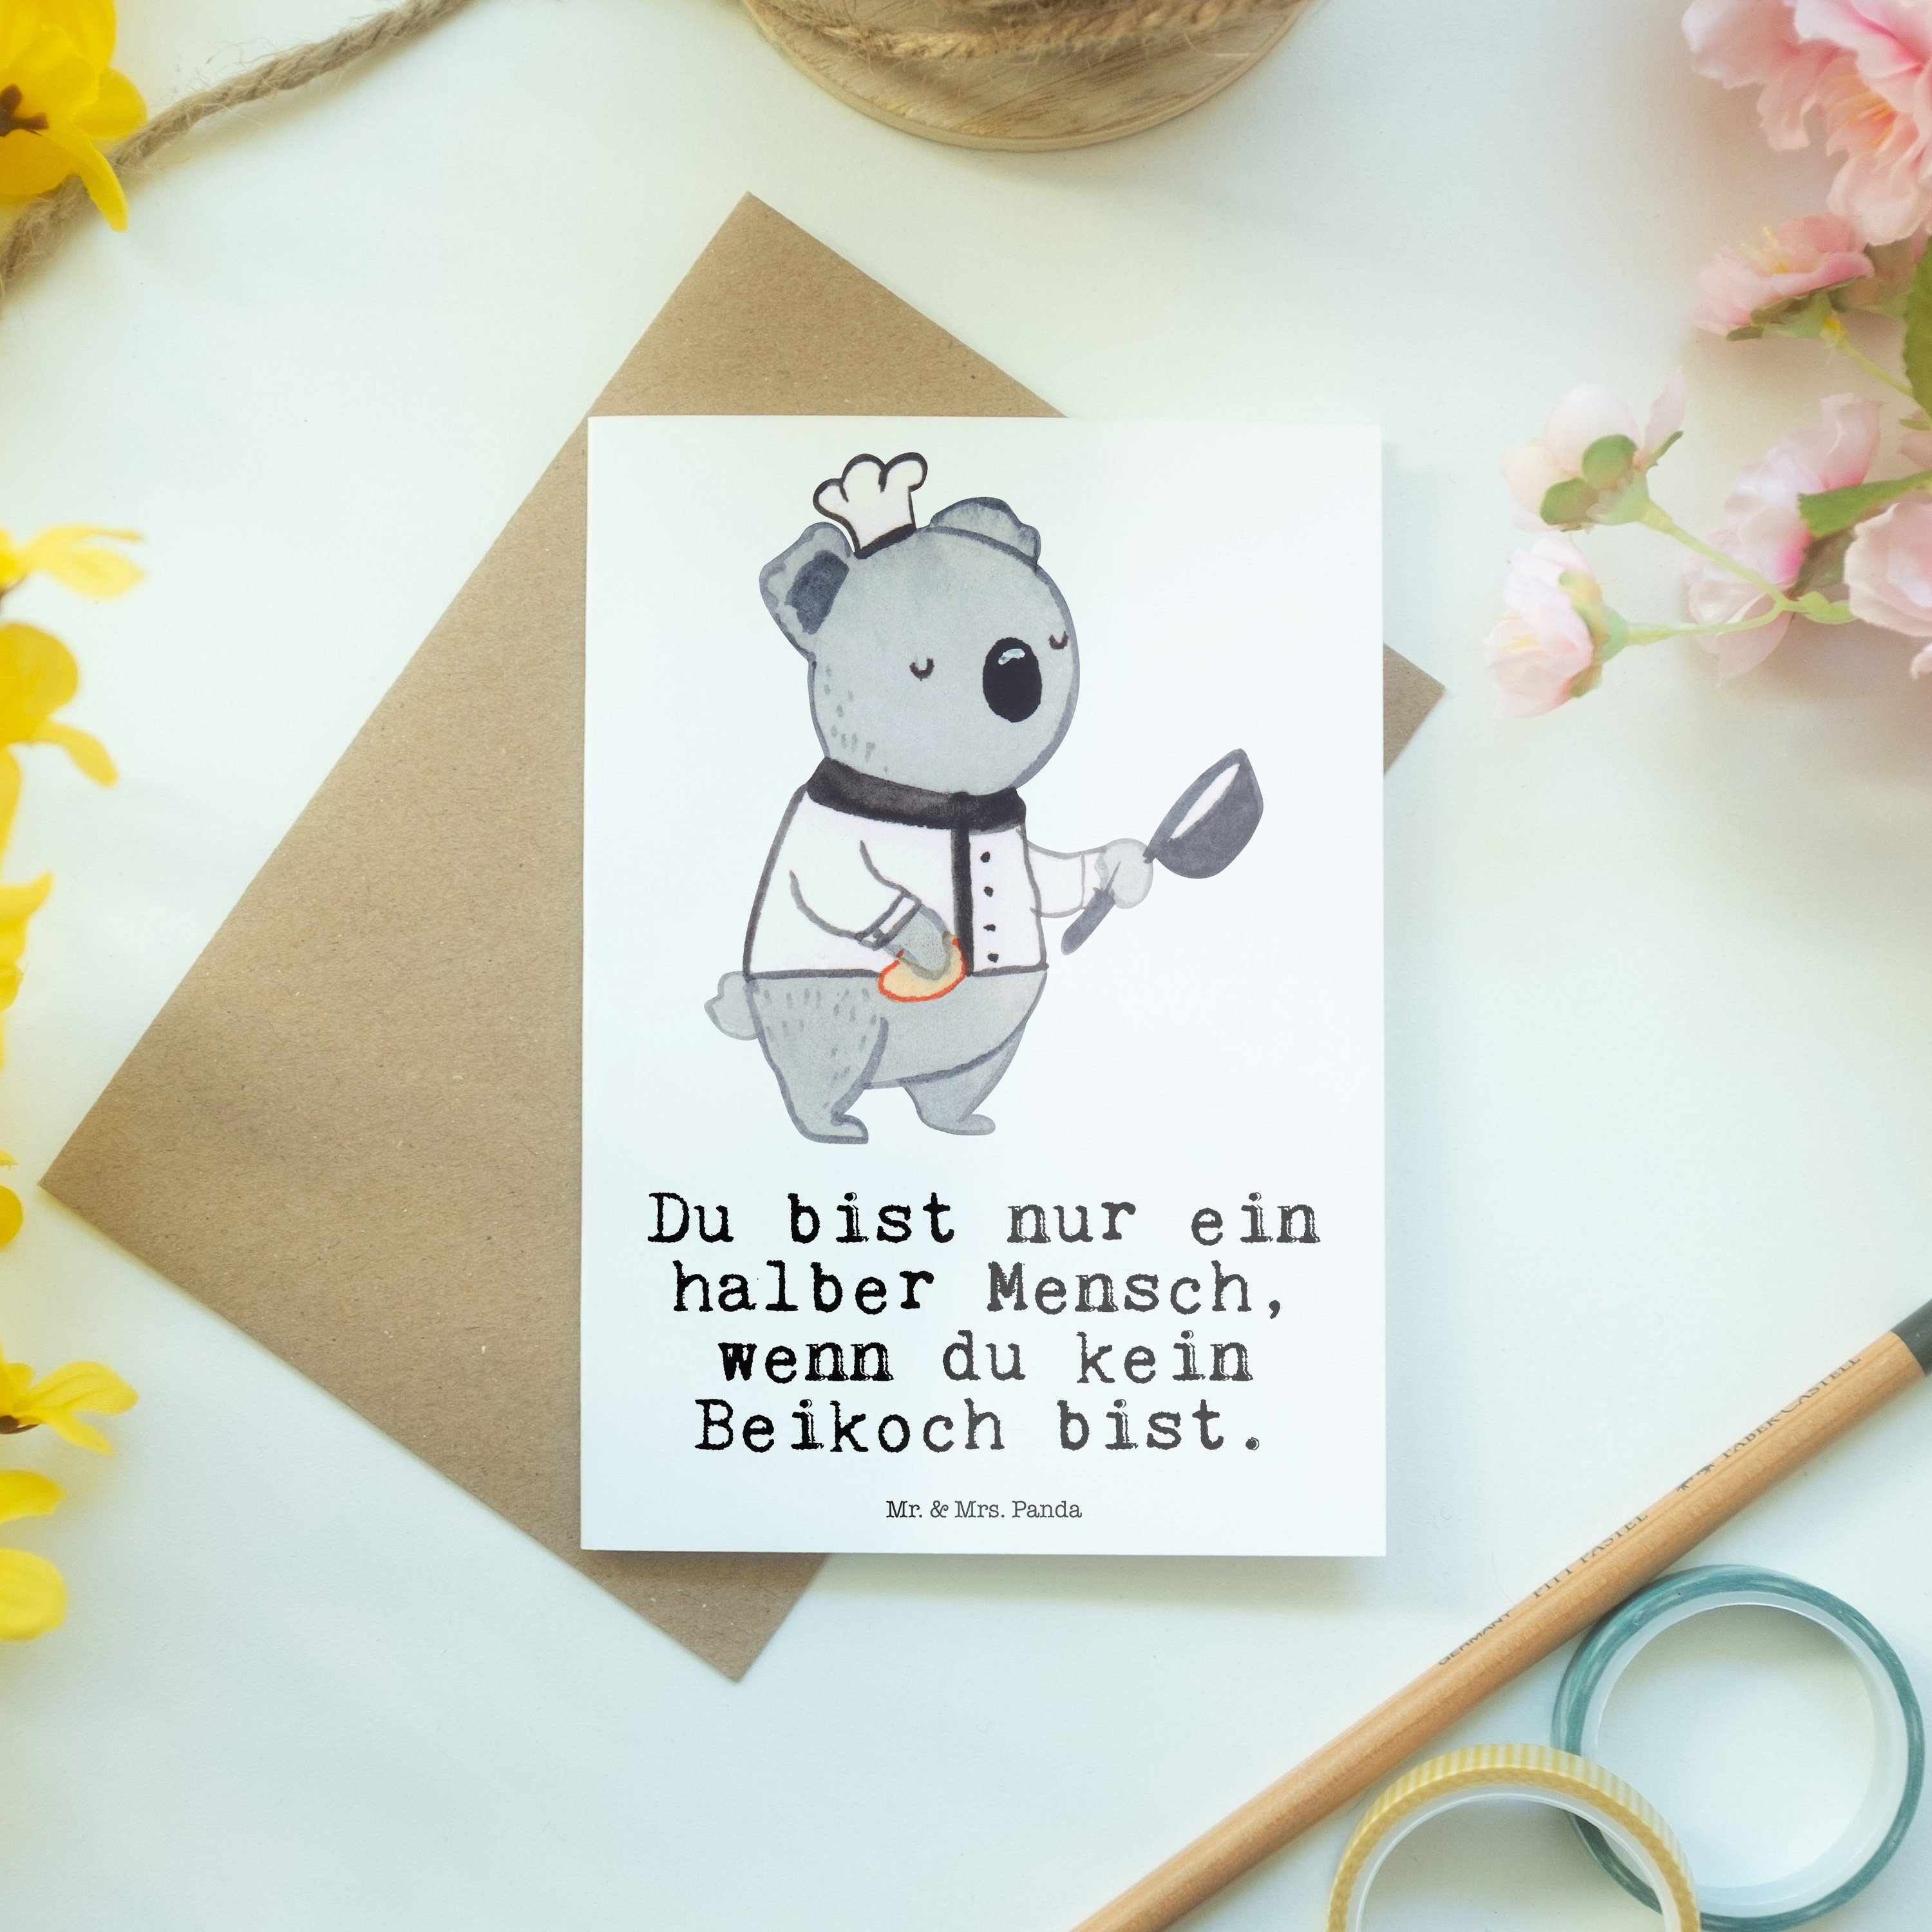 Mr. & Mrs. Panda Grußkarte Beikoch mit Herz - Weiß - Geschenk, Glückwunschkarte, Beruf, Danke, G